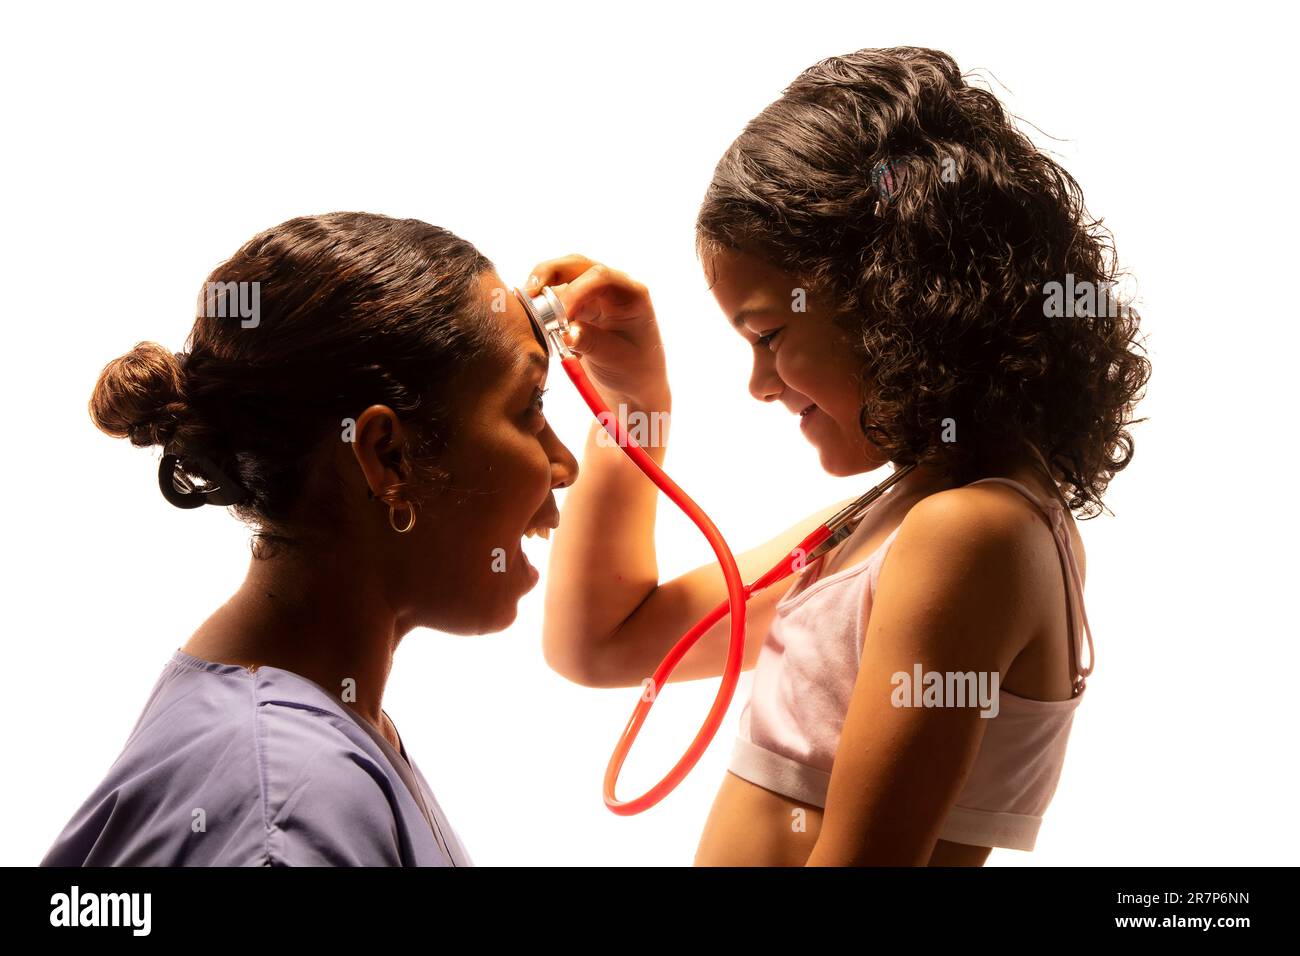 Junge Frau, die mit dem Stethoskop eines Arztes spielt. Stockfoto